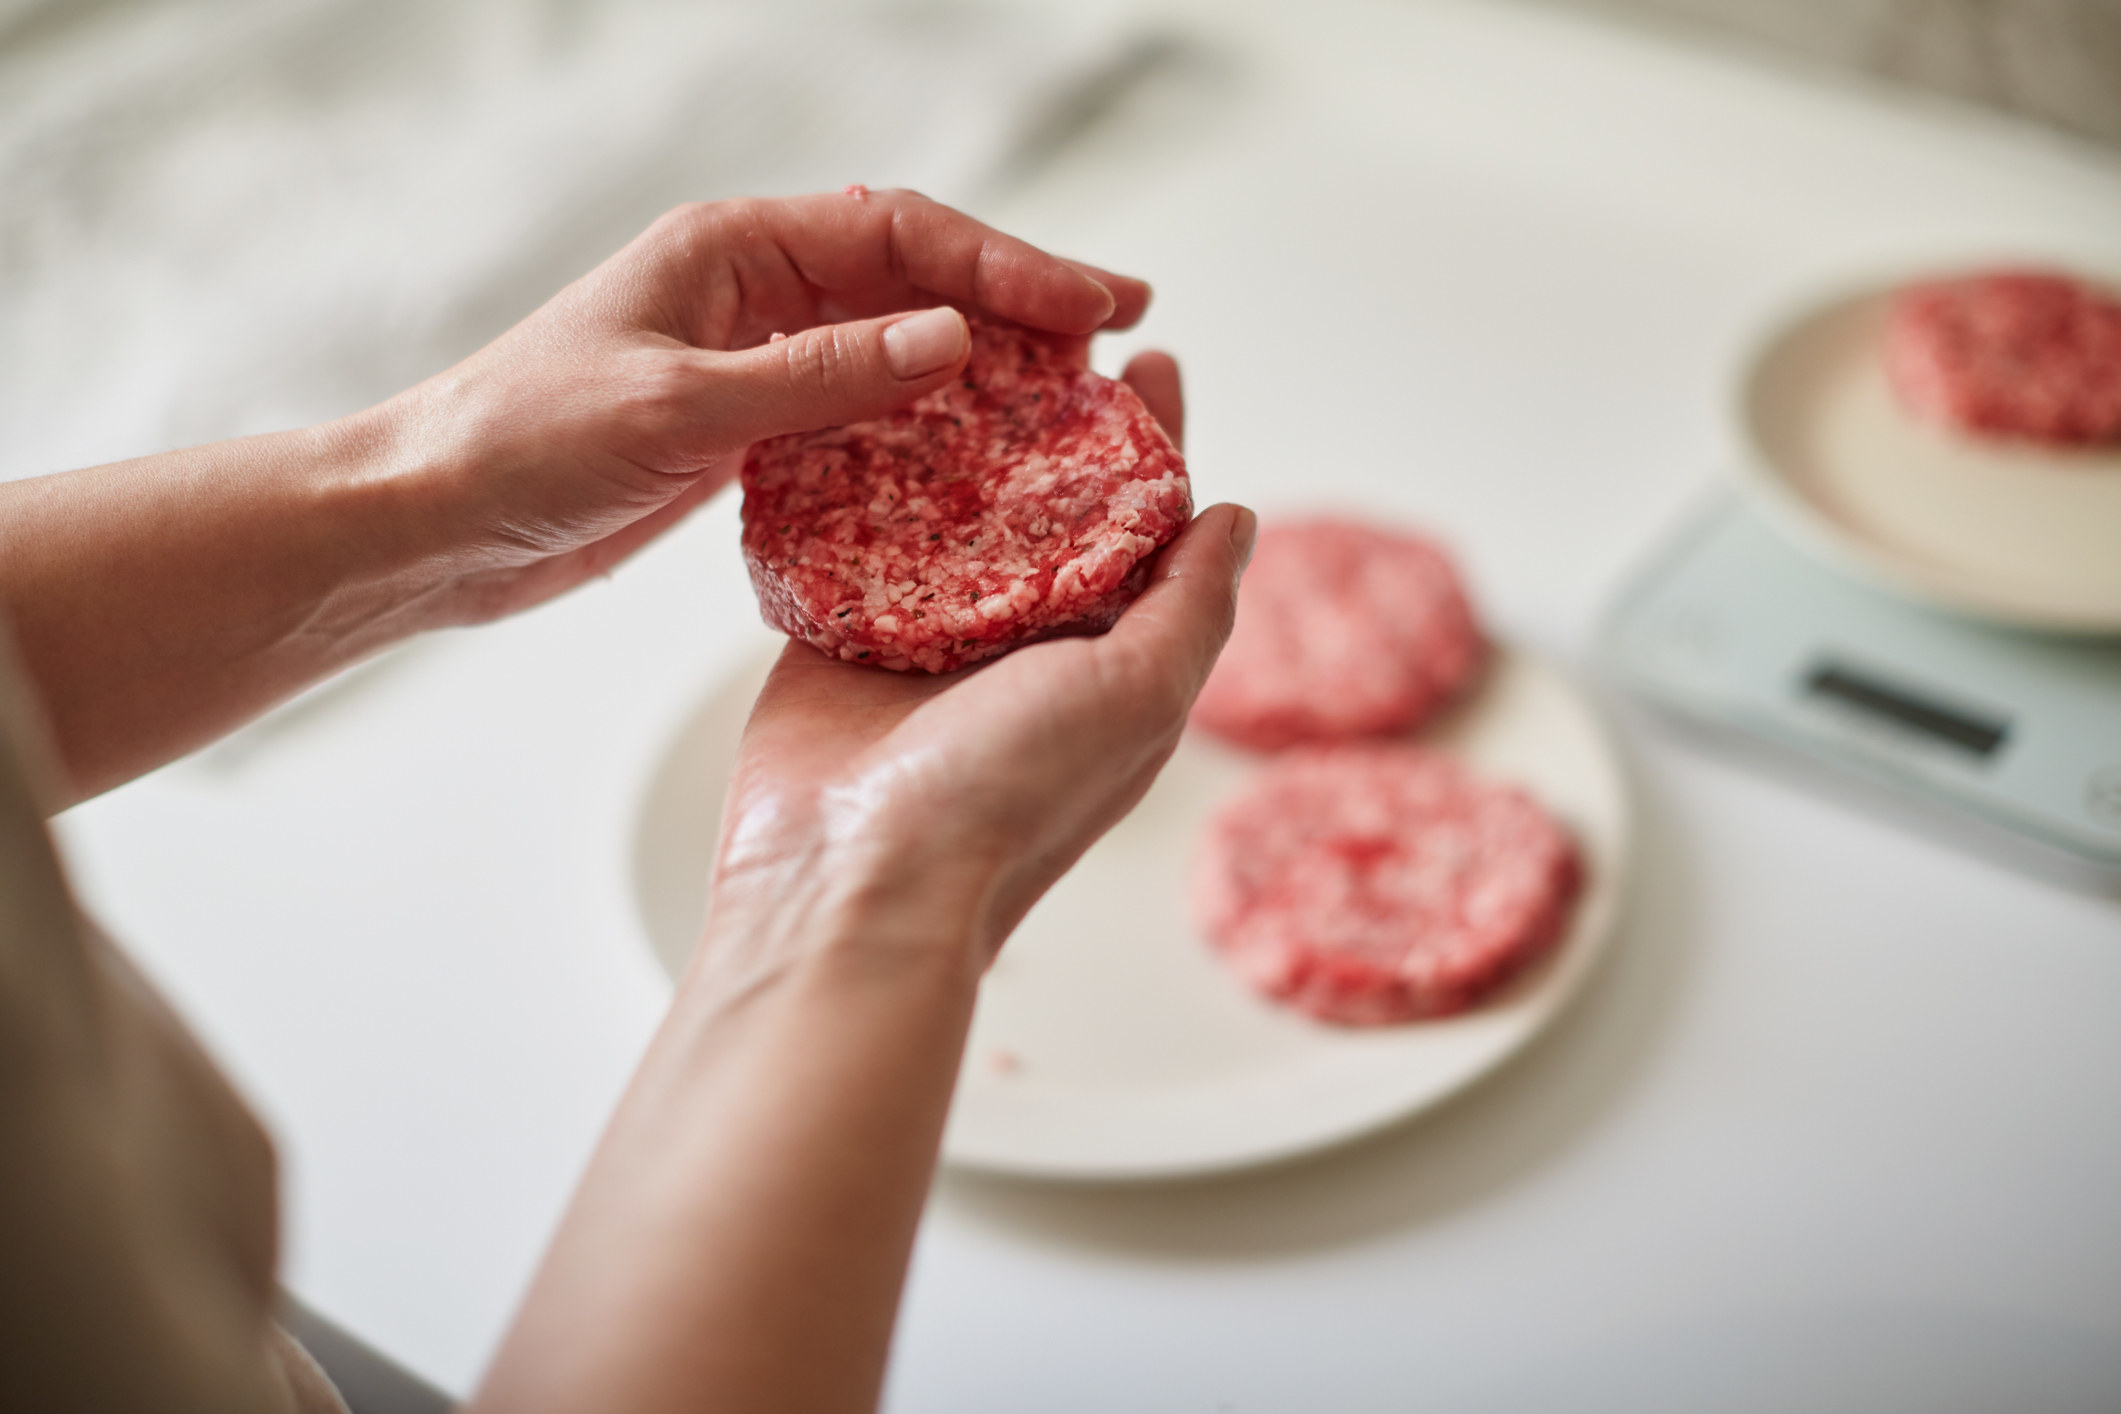 A person shaping hamburger patties